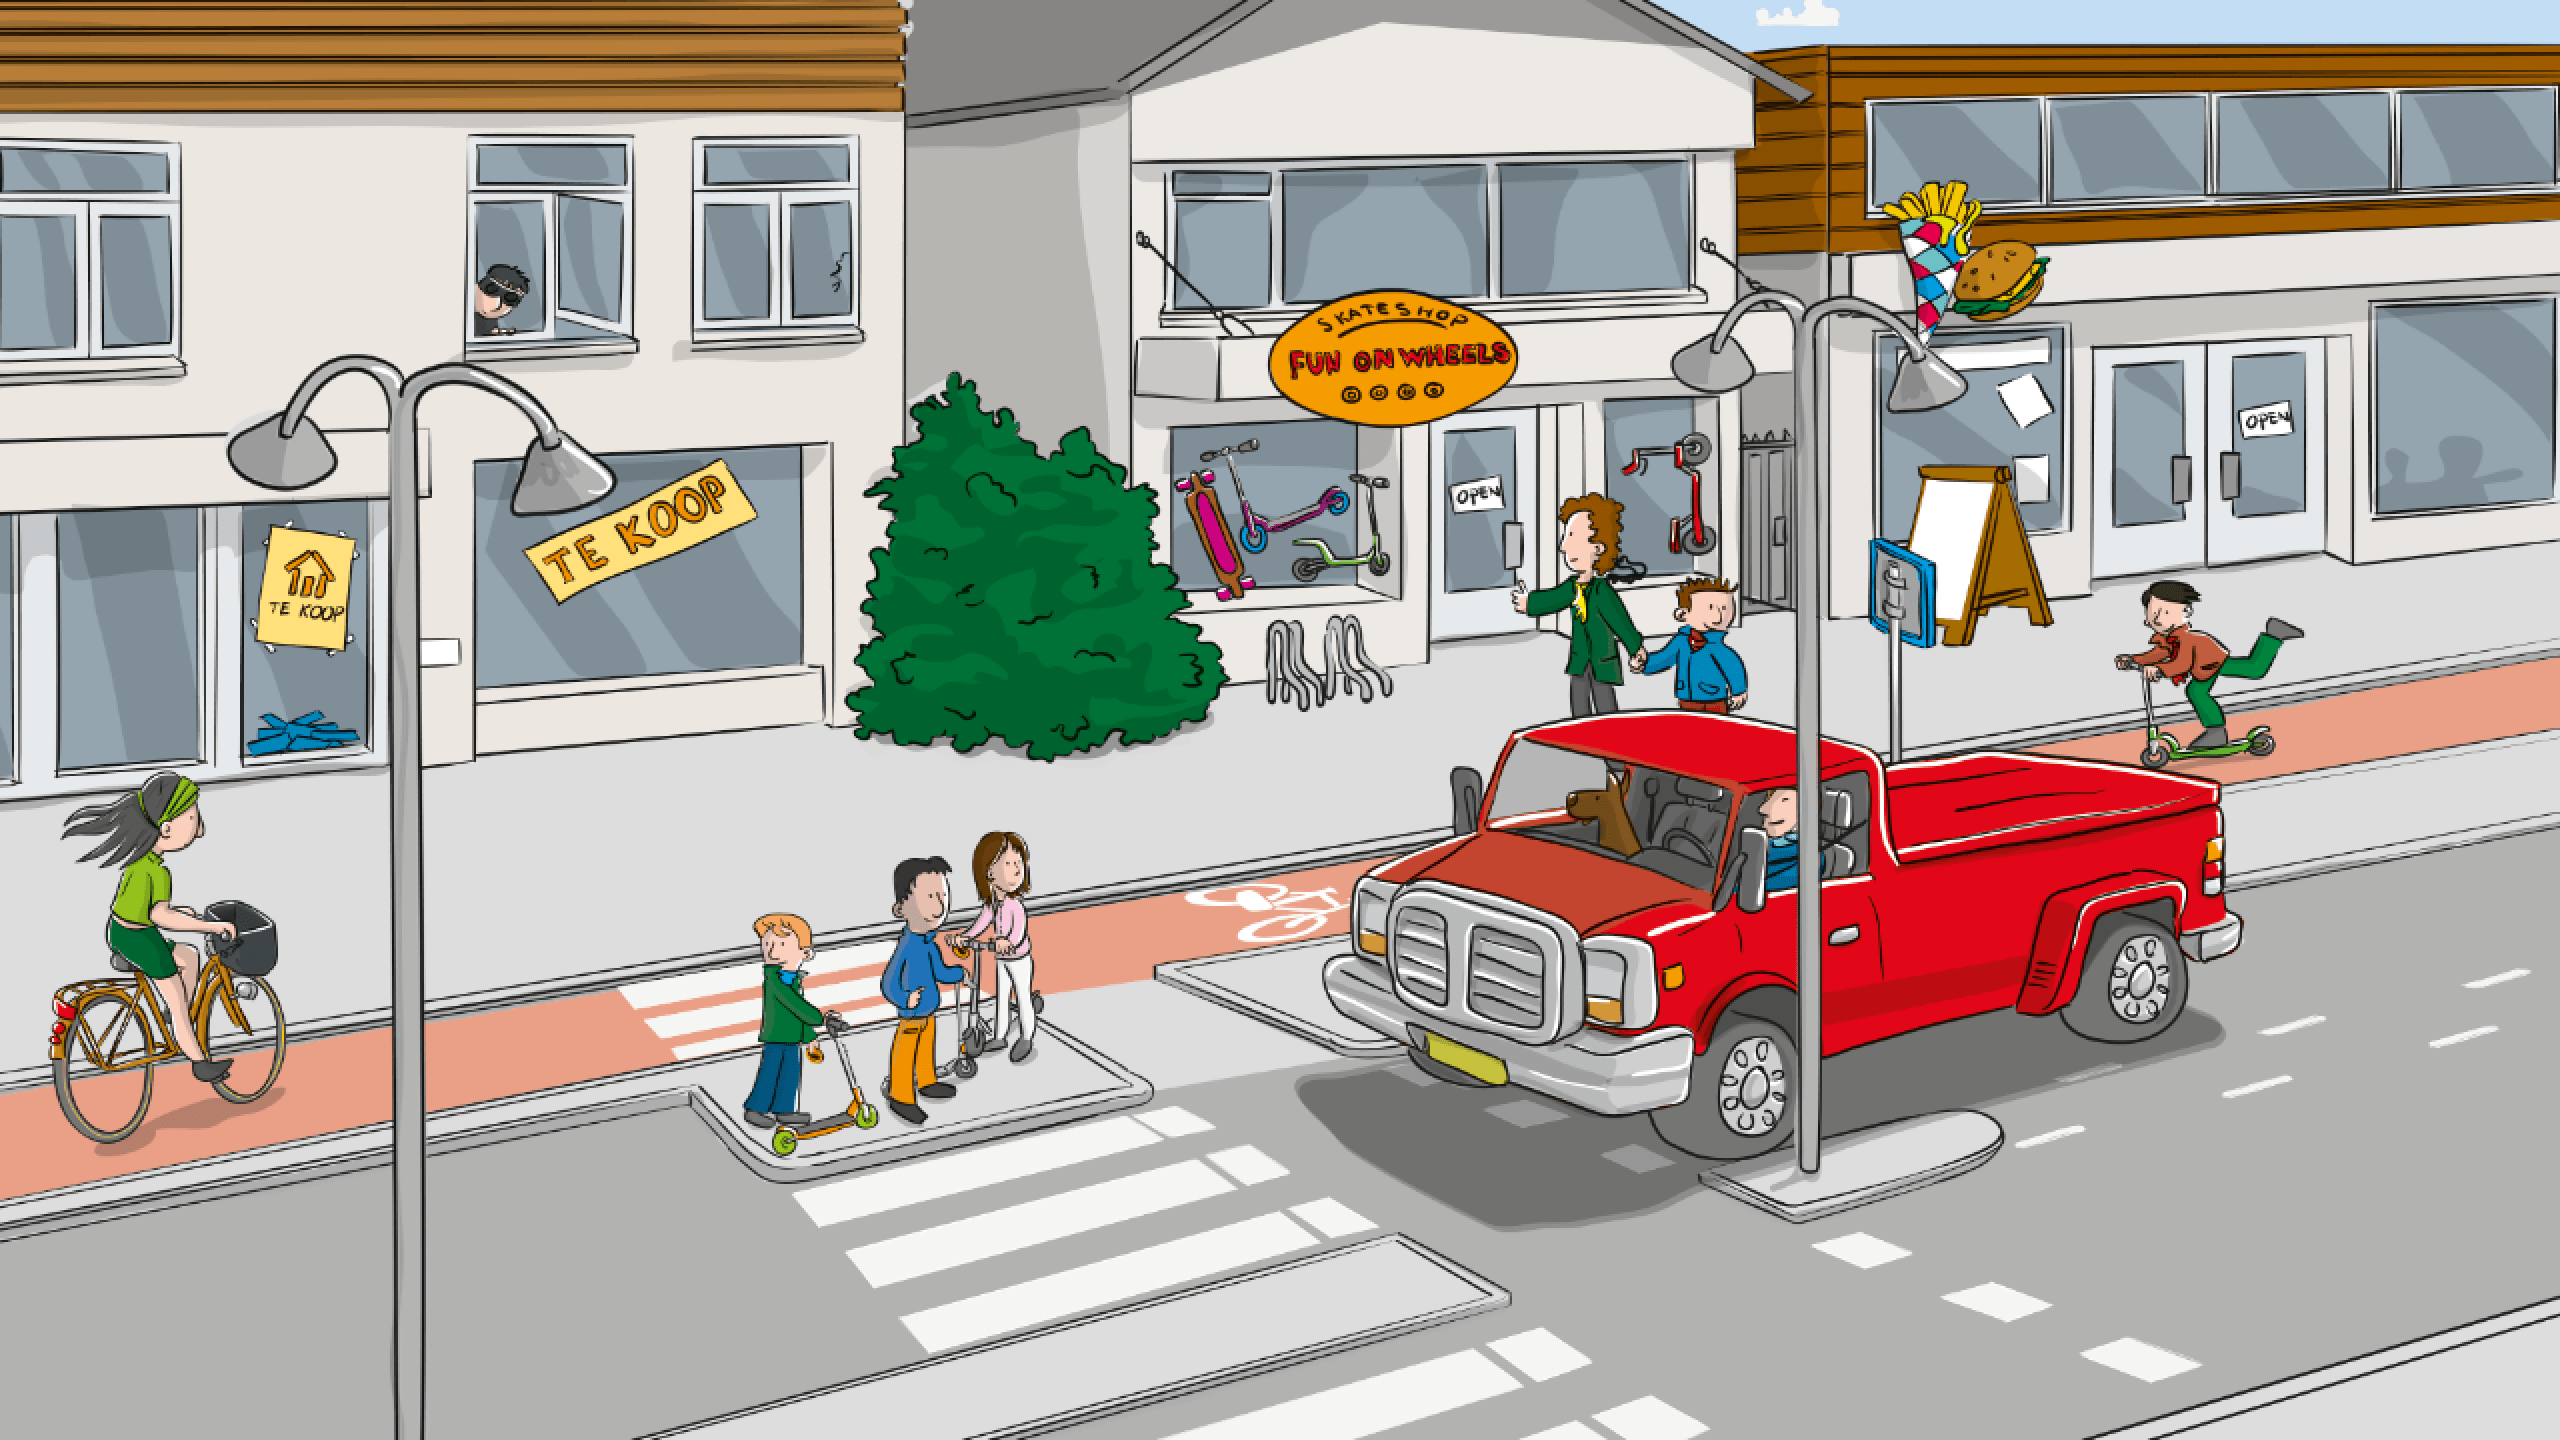 kinderen die het zebrapad willen oversteken op een drukke weg (illustratie)